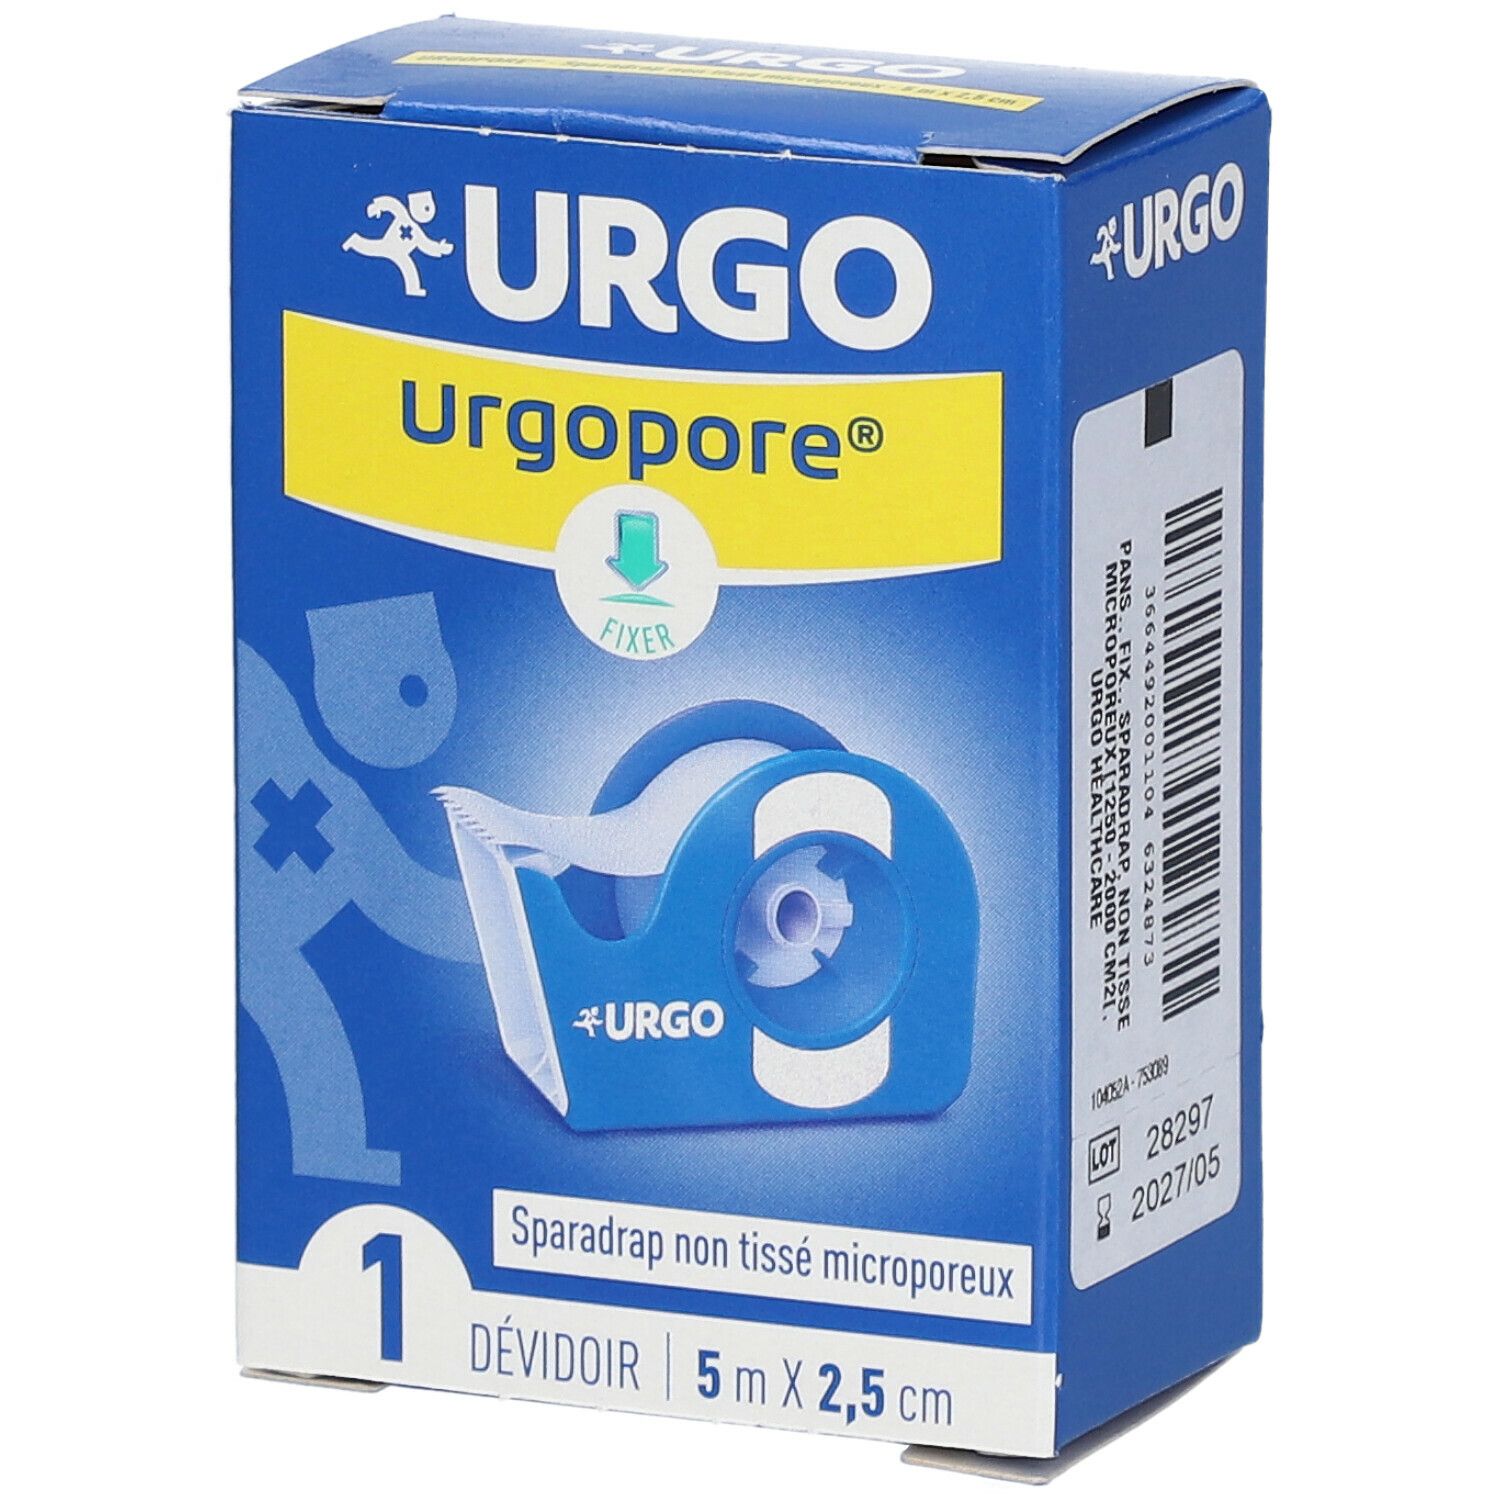 Urgo Urgopore® Géant Sparadrap non tissé microporeux 5 m x 2,5 cm